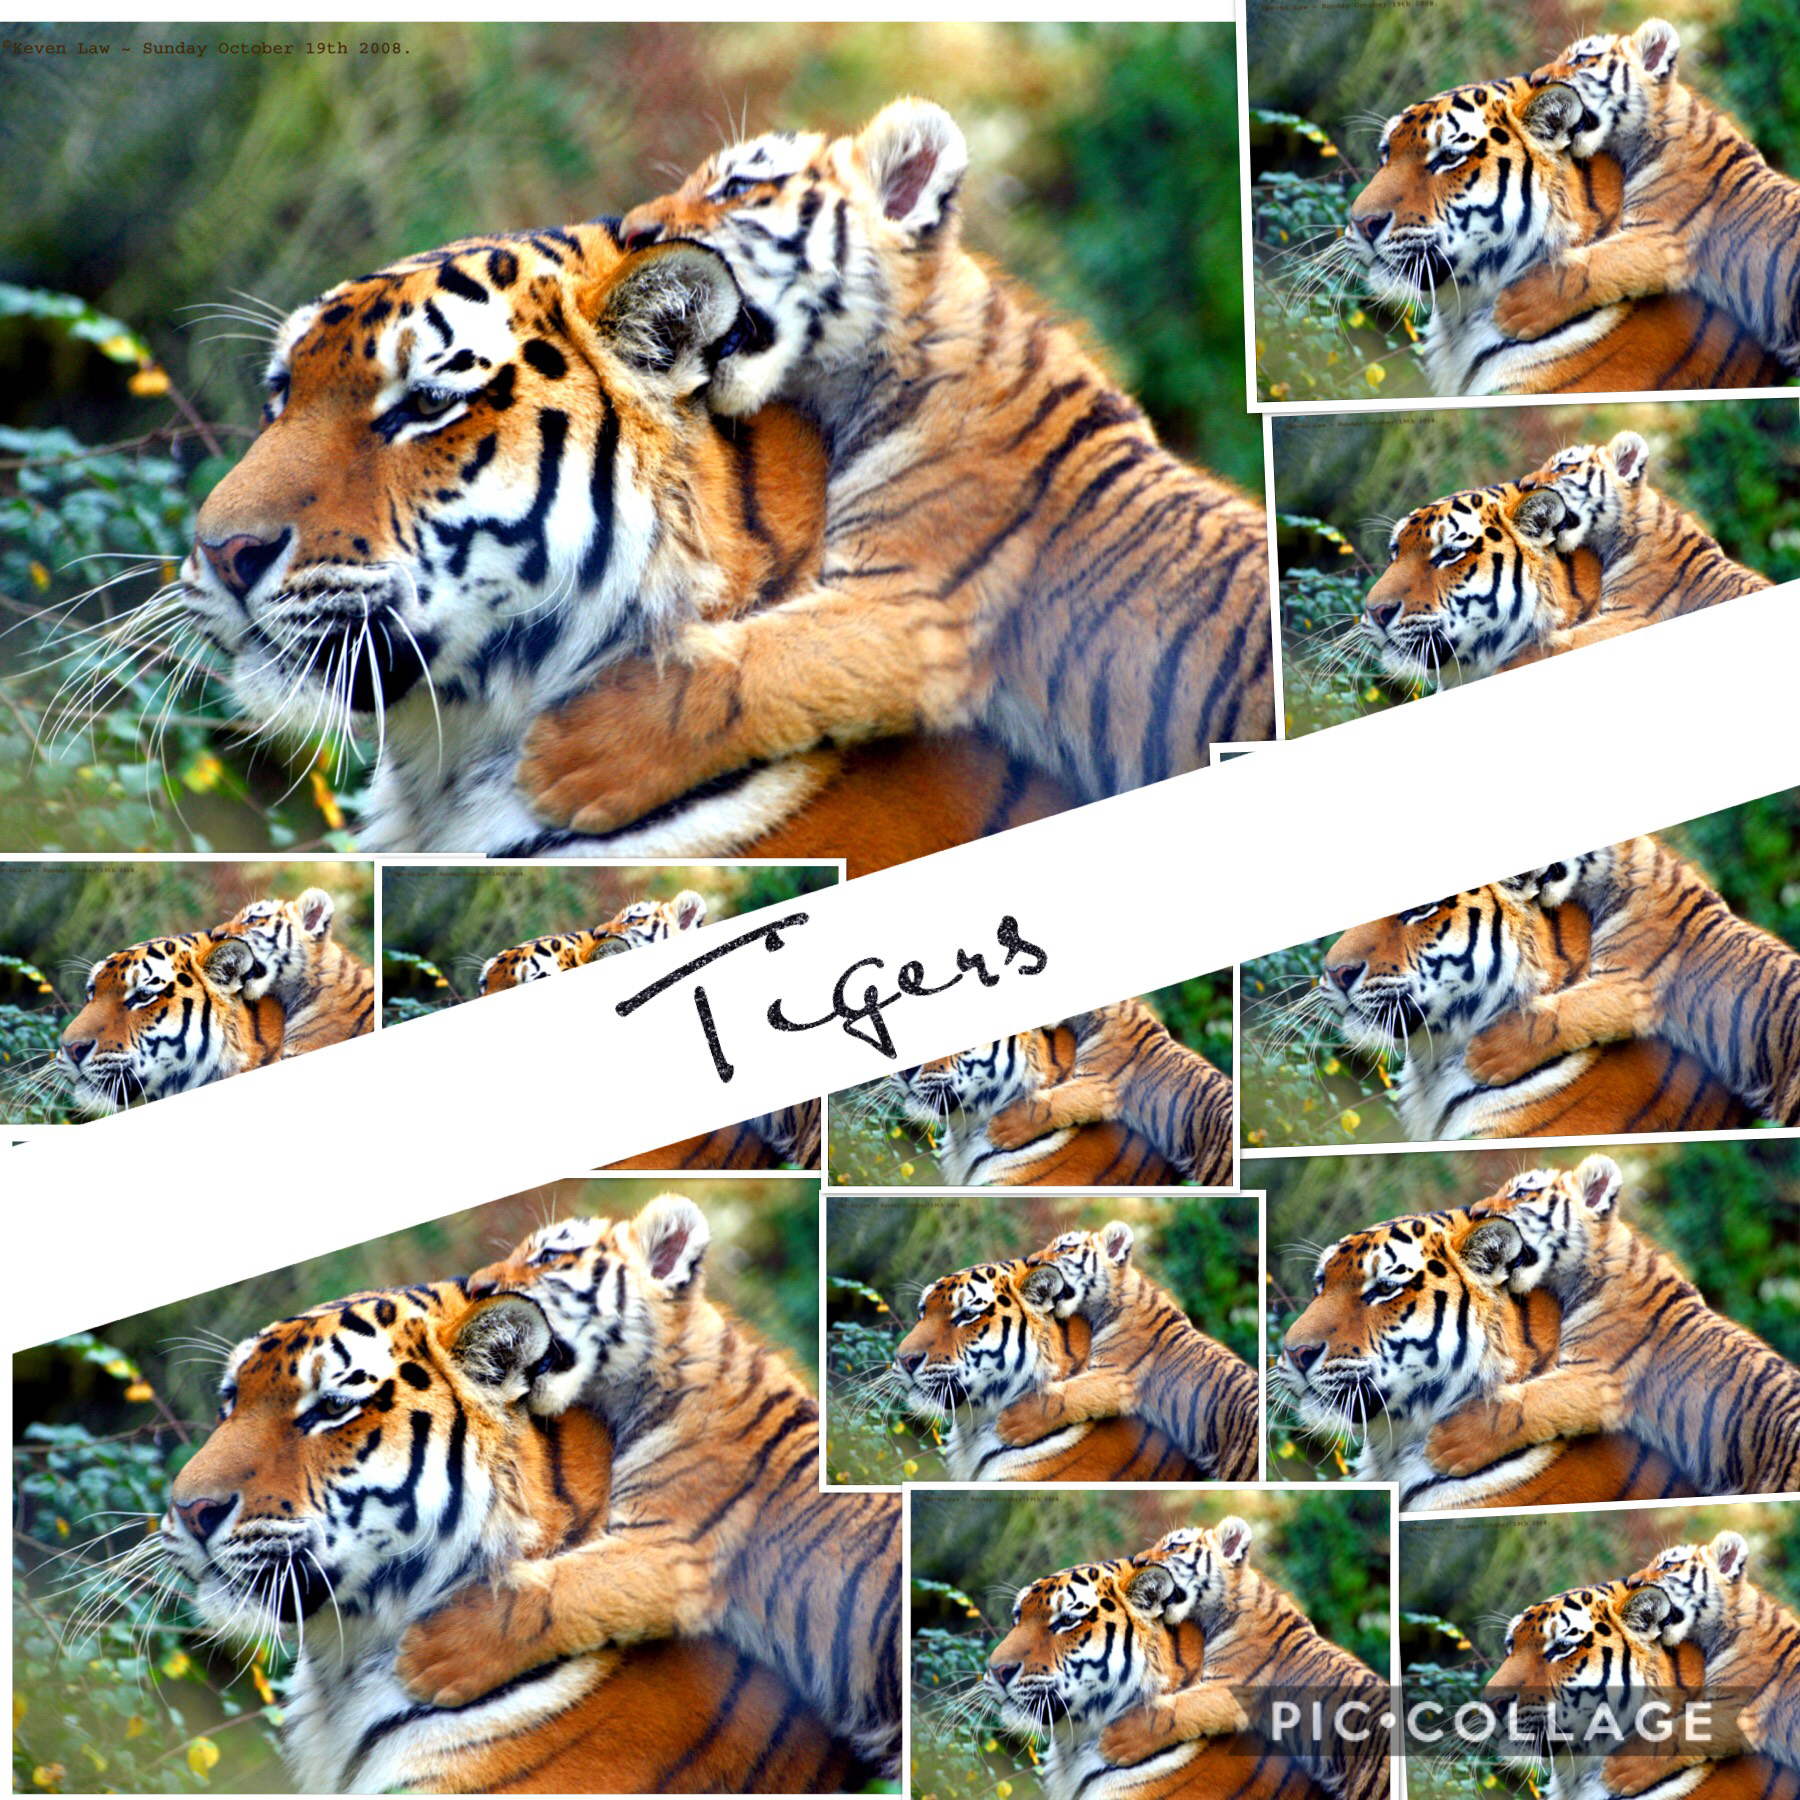 Tigers! 🐅 